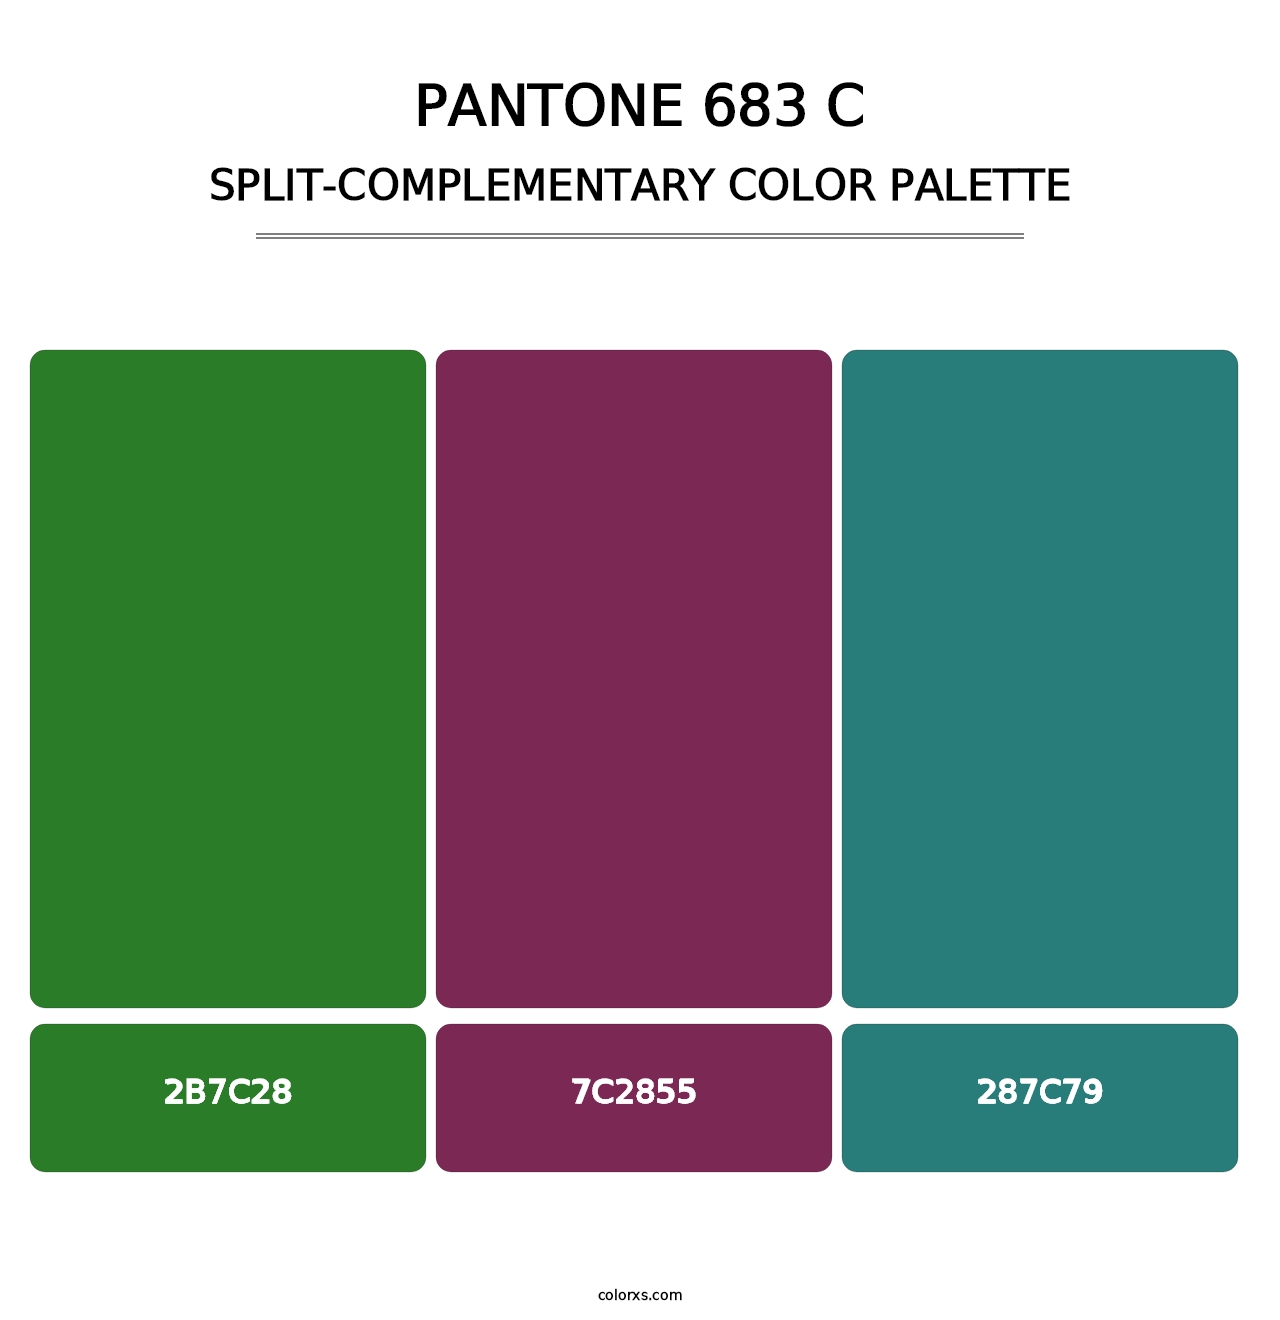 PANTONE 683 C - Split-Complementary Color Palette